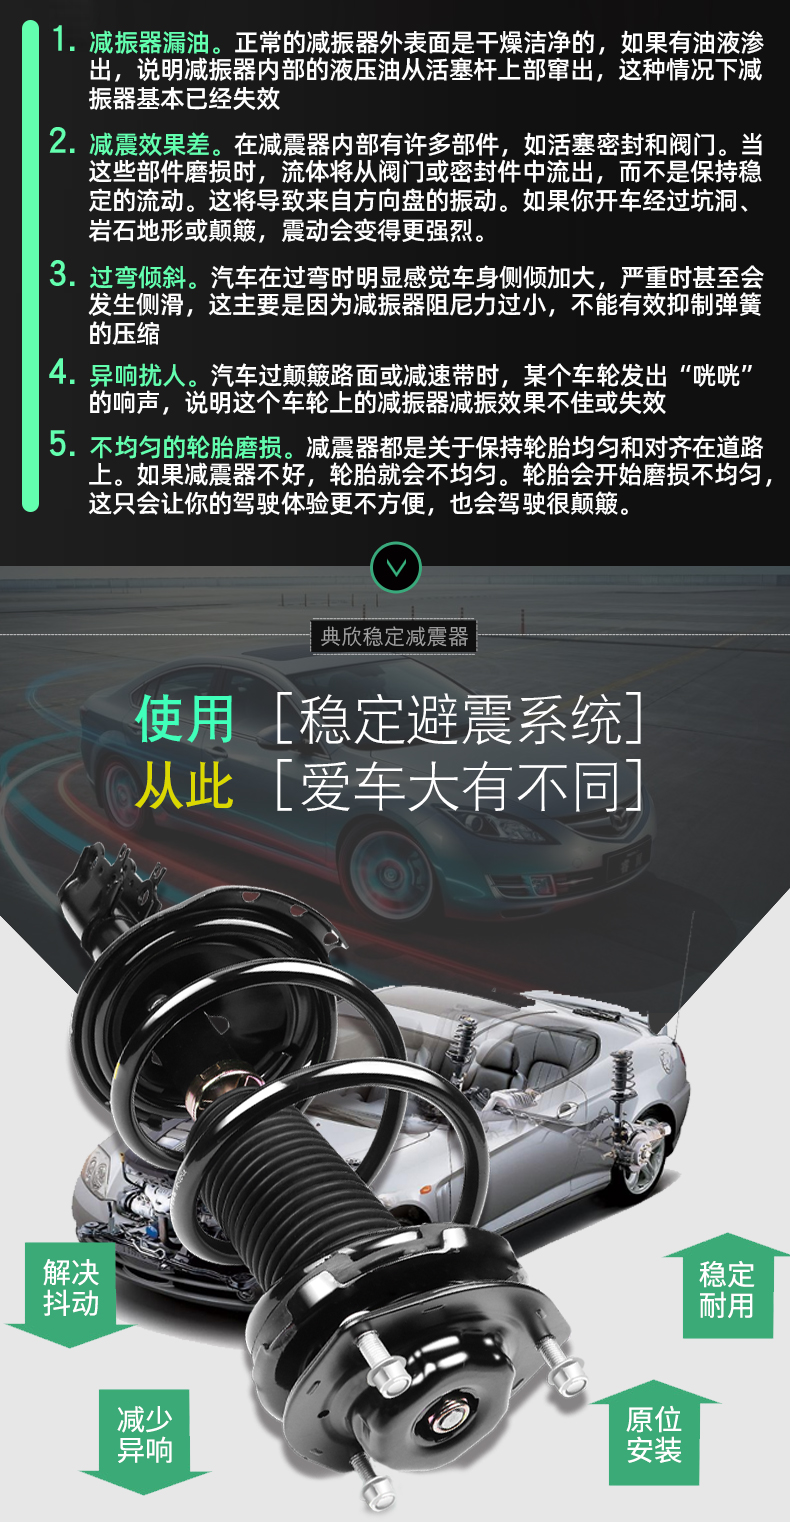 Cụm giảm xóc Volkswagen 6 Golf 4 Lingdu Langxing Skoda Octavia Hao Rui Jing Rui Ye Di Xin Rui giảm xóc cân thước lái vô lăng ô tô